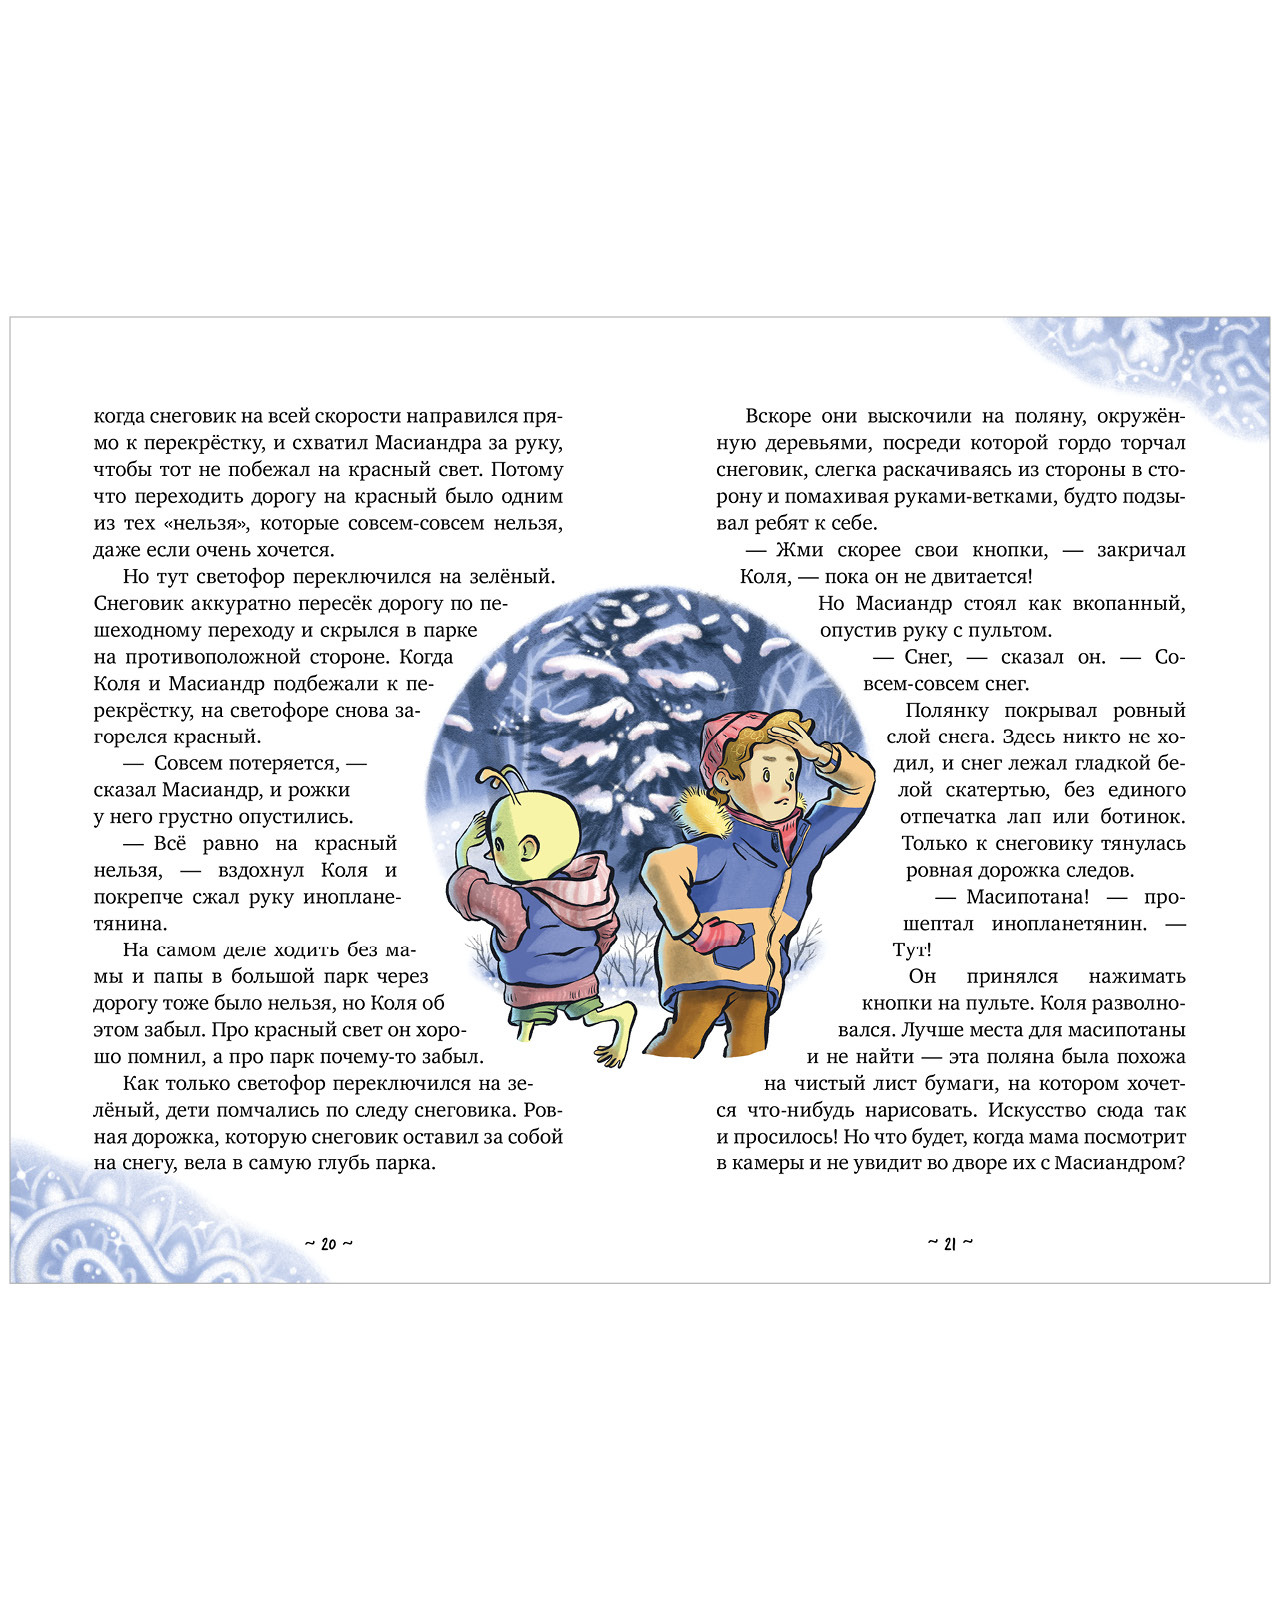 100 красивых стихов про зиму для детей: времена года